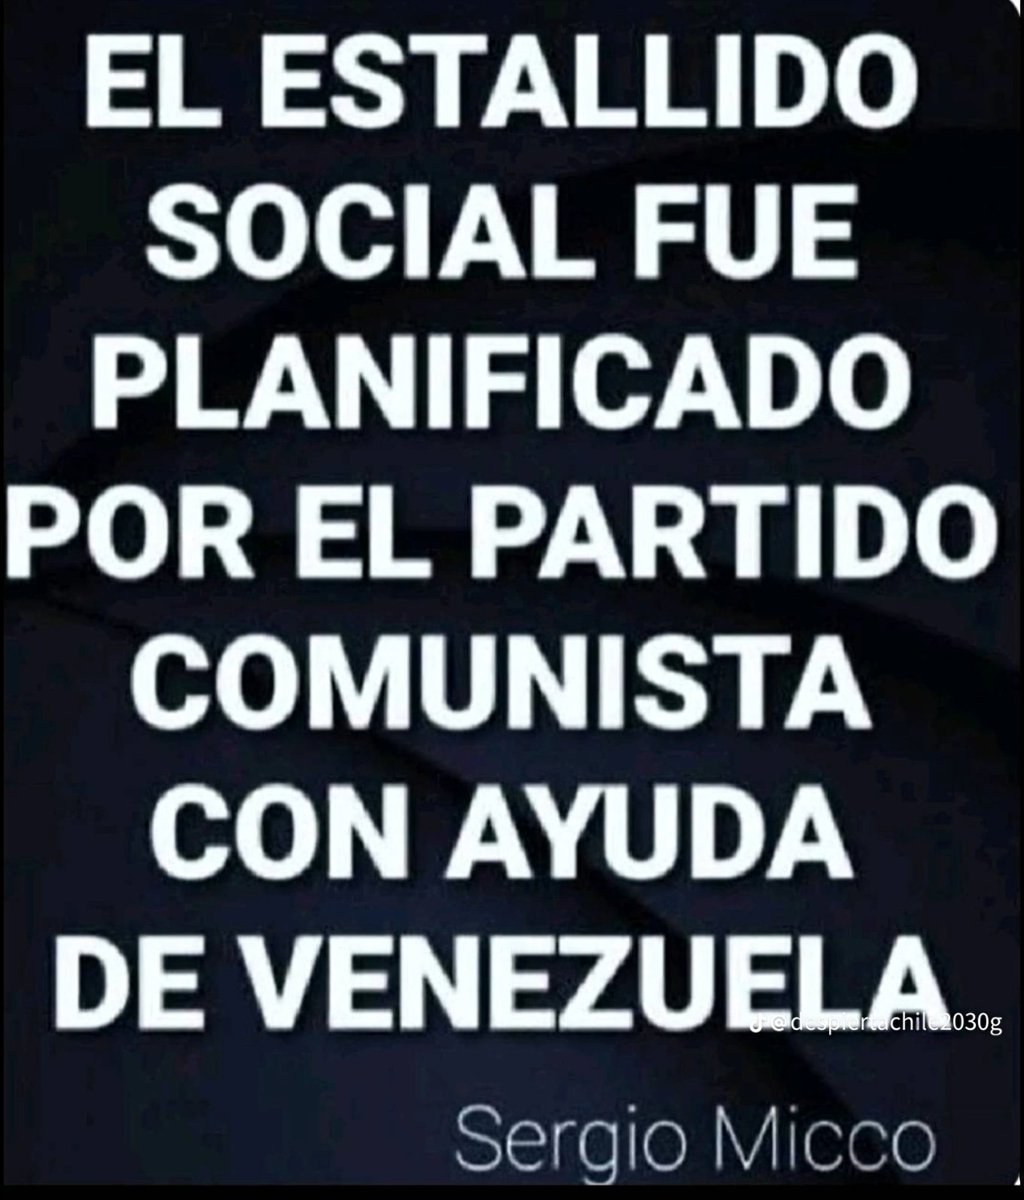 Será un año duro pero veremos la caída del Partido Comunista y el @GobiernodeChile 👌 El 'impass'  con #MaduroValeVerga les va a costar caro y se pondrá a 'cantar'. Este año caen TODOS. 
#GolpeDeEstado
#BoricValeVerga
#BoricAsesino